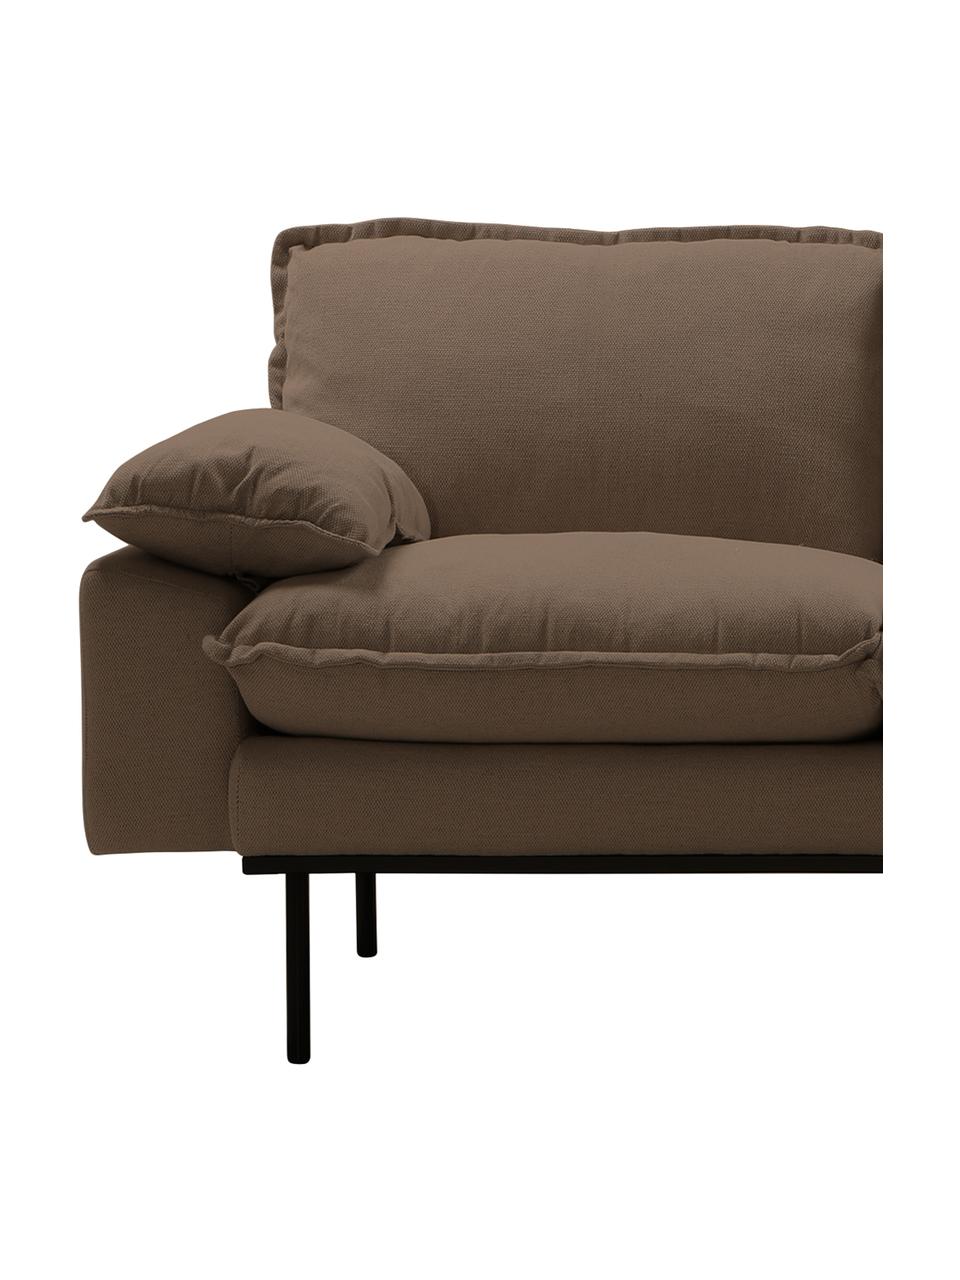 Sofa Magnolia (3-Sitzer) in Braun mit Metall-Füssen, Bezug: 63% Baumwolle, 37% Leinen, Stoff Braun, B 225 x T 94 cm